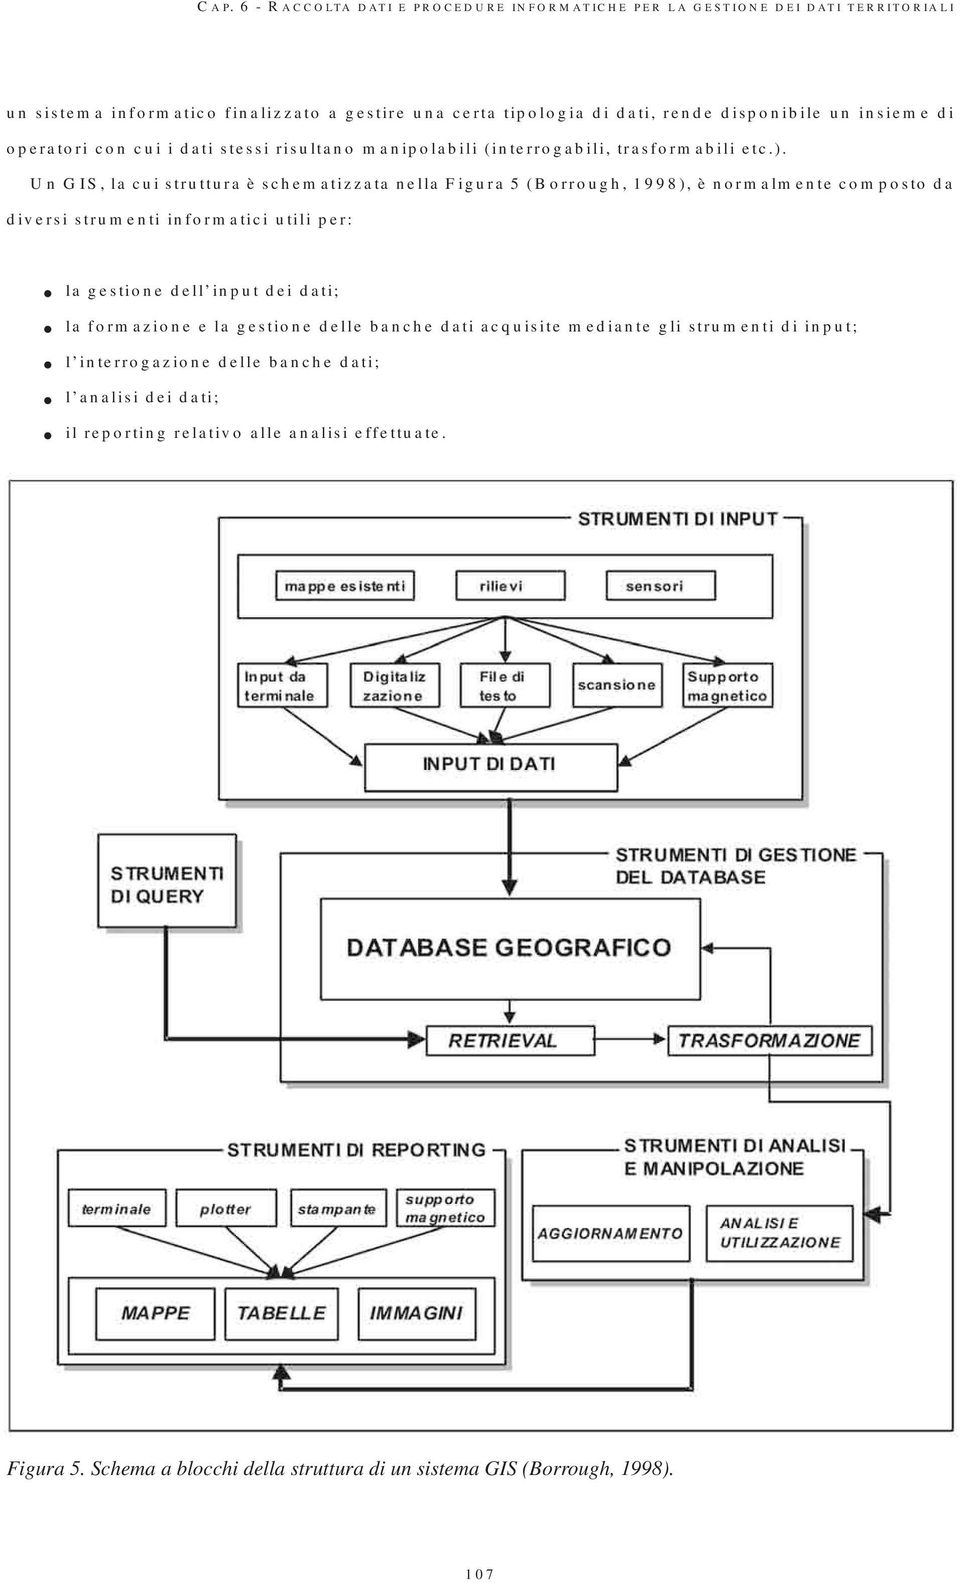 Un GIS, la cui struttura è schematizzata nella Figura 5 (Borrough, 1998), è normalmente composto da diversi strumenti informatici utili per: la gestione dell input dei dati; la